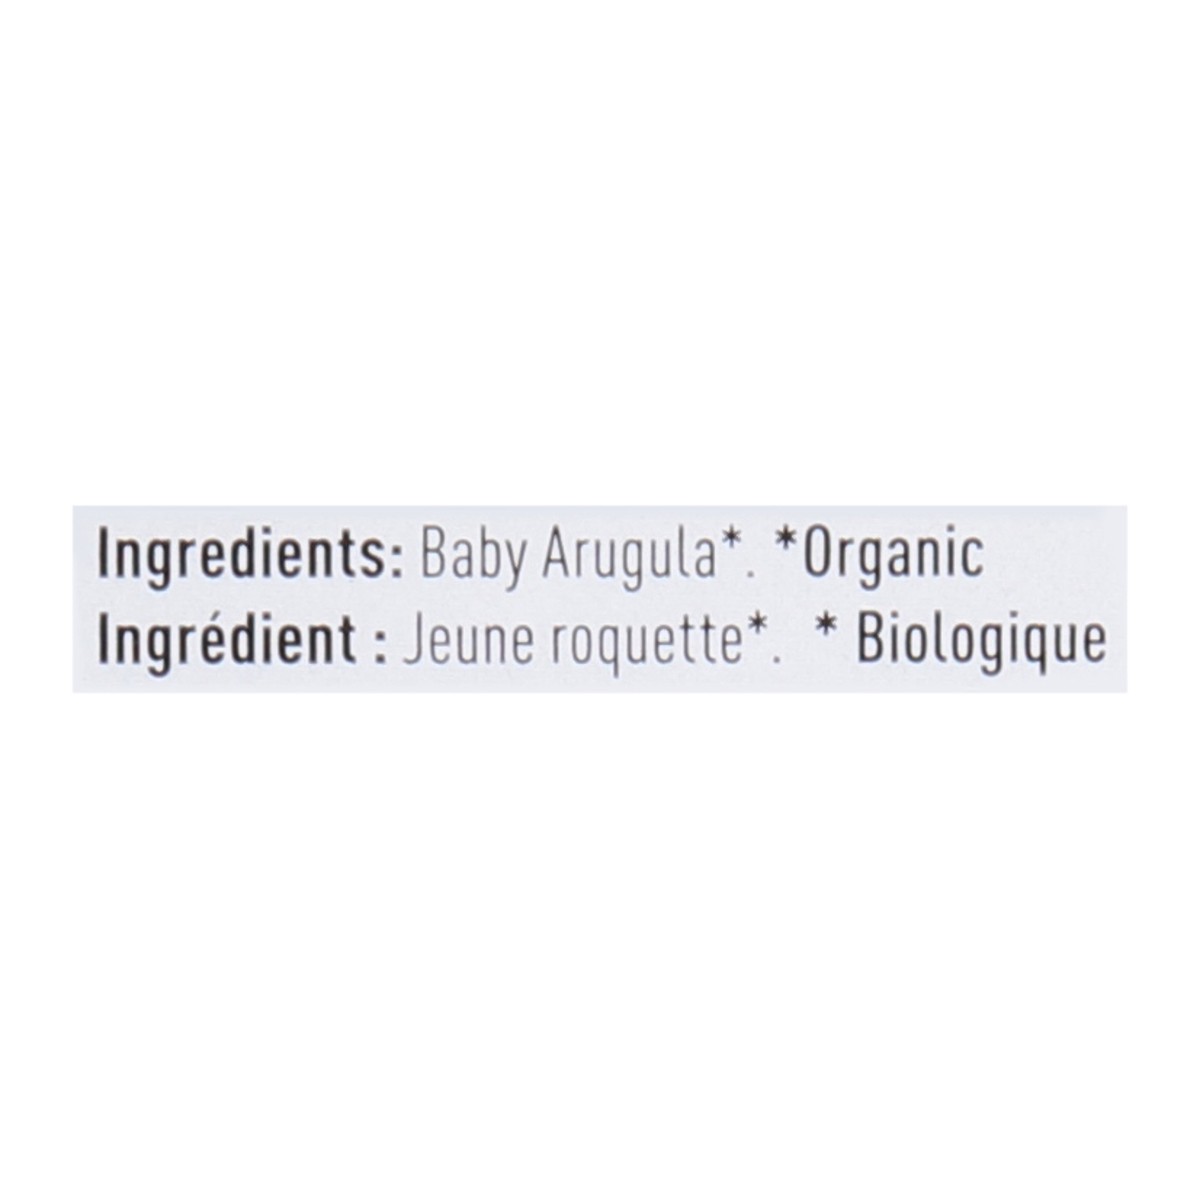 slide 3 of 9, Earthbound Farm Organic Baby Arugula, 5 oz